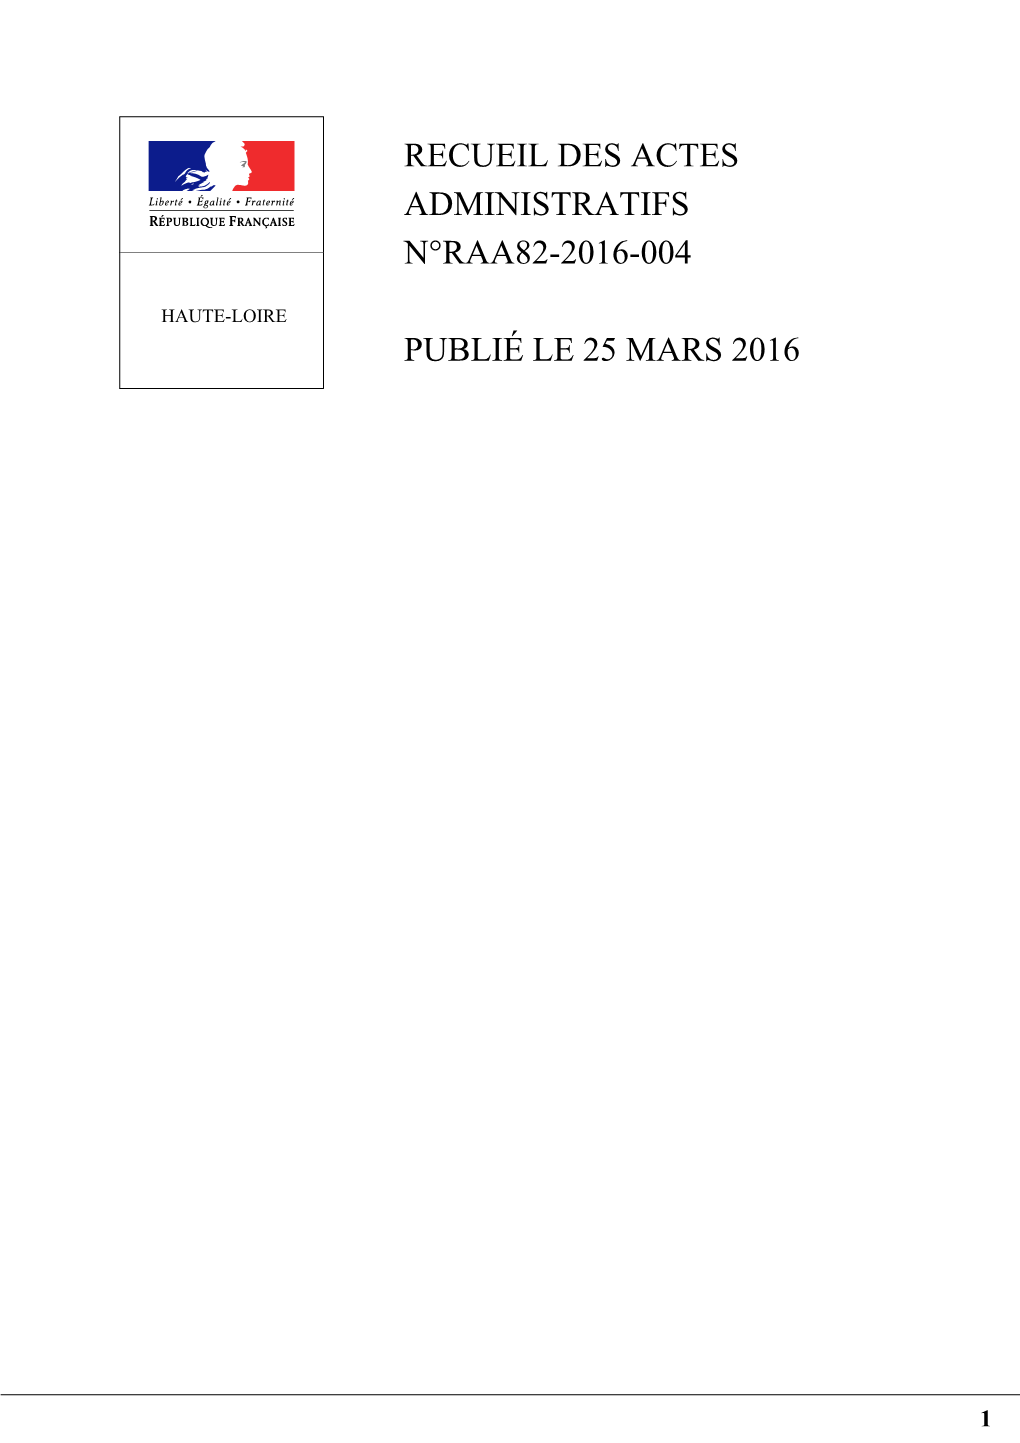 Recueil Des Actes Administratifs N°Raa82-2016-004 Publié Le 25 Mars